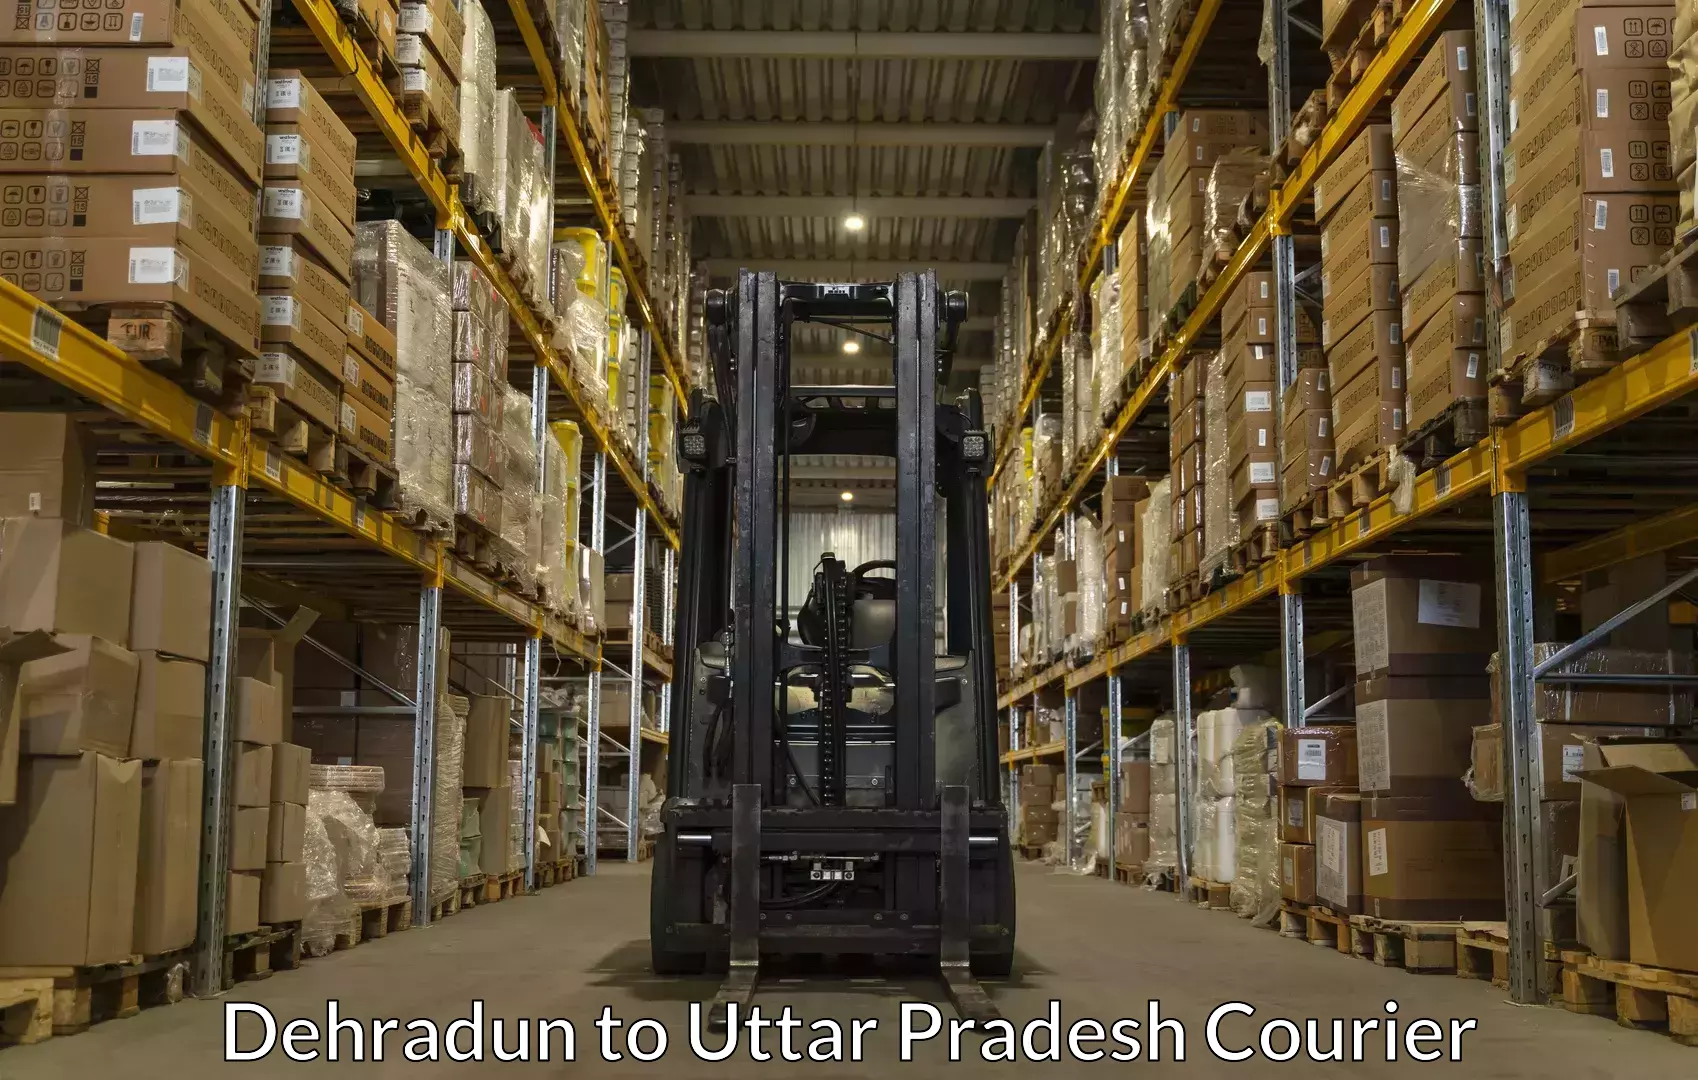 Baggage courier operations Dehradun to Sahatwar